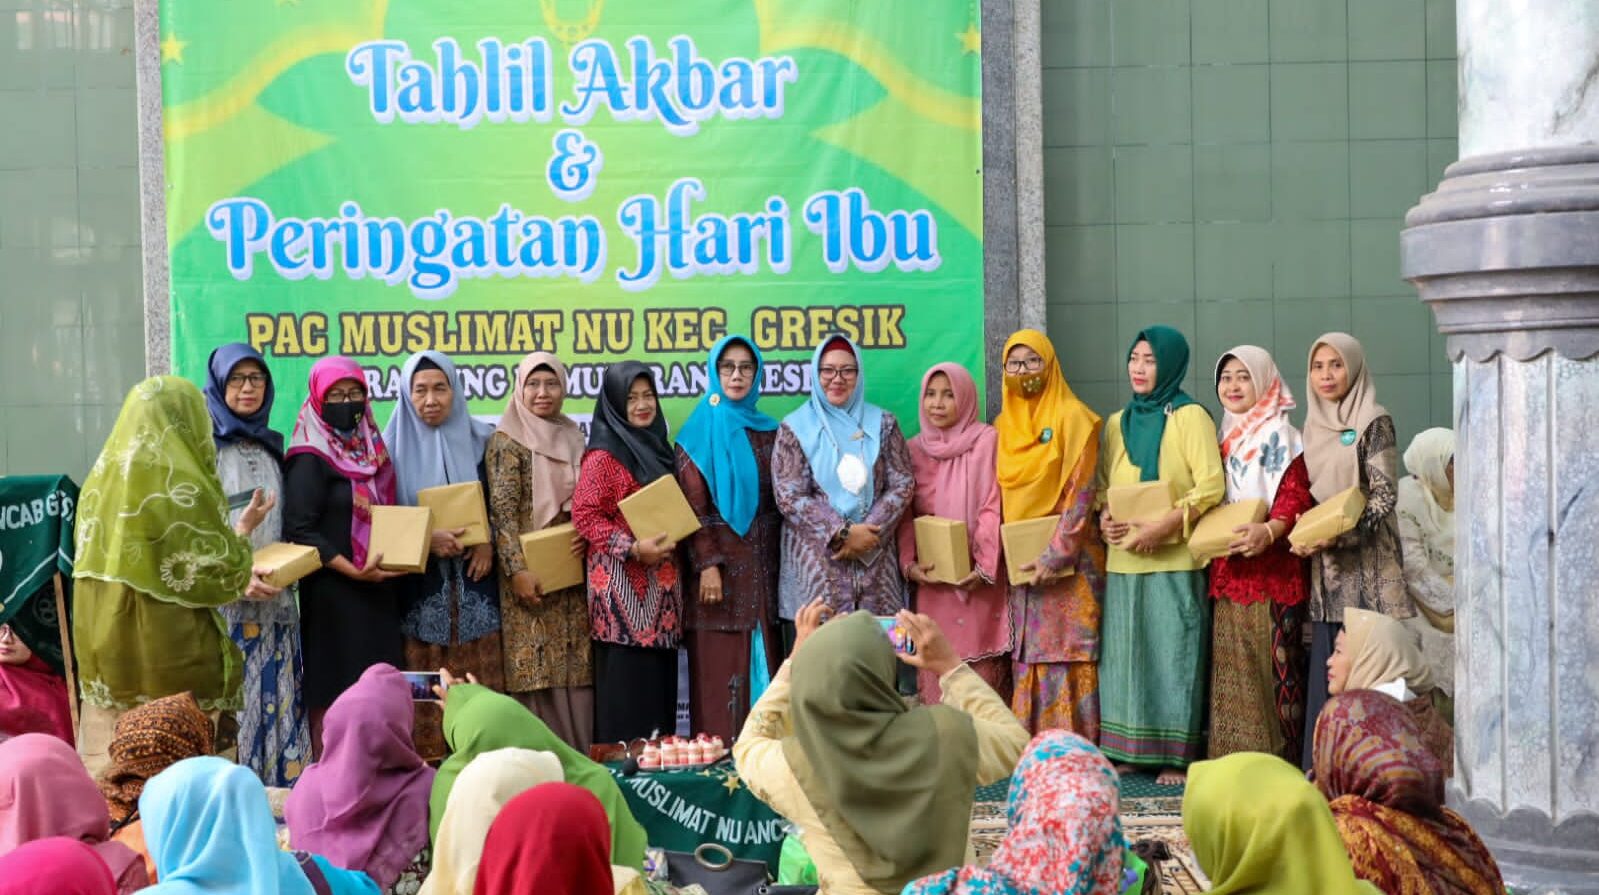 Wakil Bupati Gresik Hj. Aminatun Habibah, saat menghadiri peringatan Hari Ibu bersama Muslimat Nahdlatul Ulama' (NU) Gresik, di Masjid Jama'atul Ikhwan, Kemuteran, Gresik, Minggu (8/1/2023).